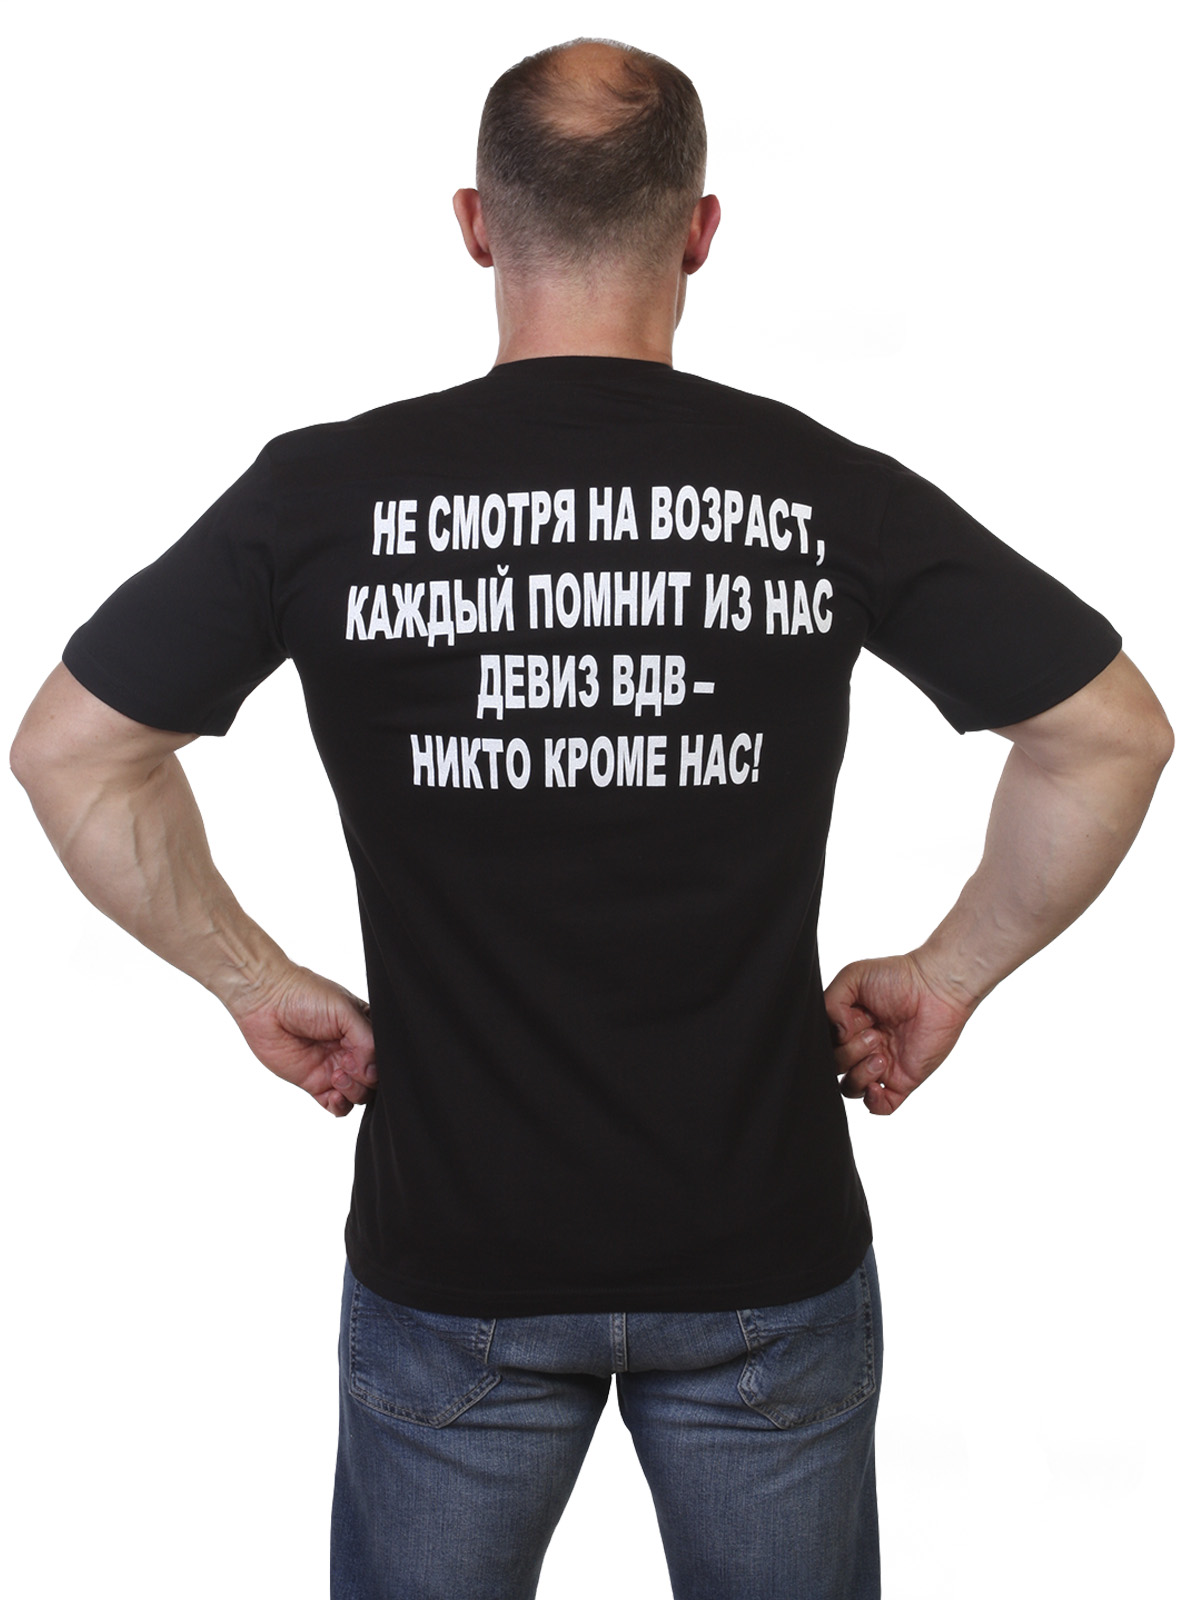 Купить футболку ВДВ в Военпро